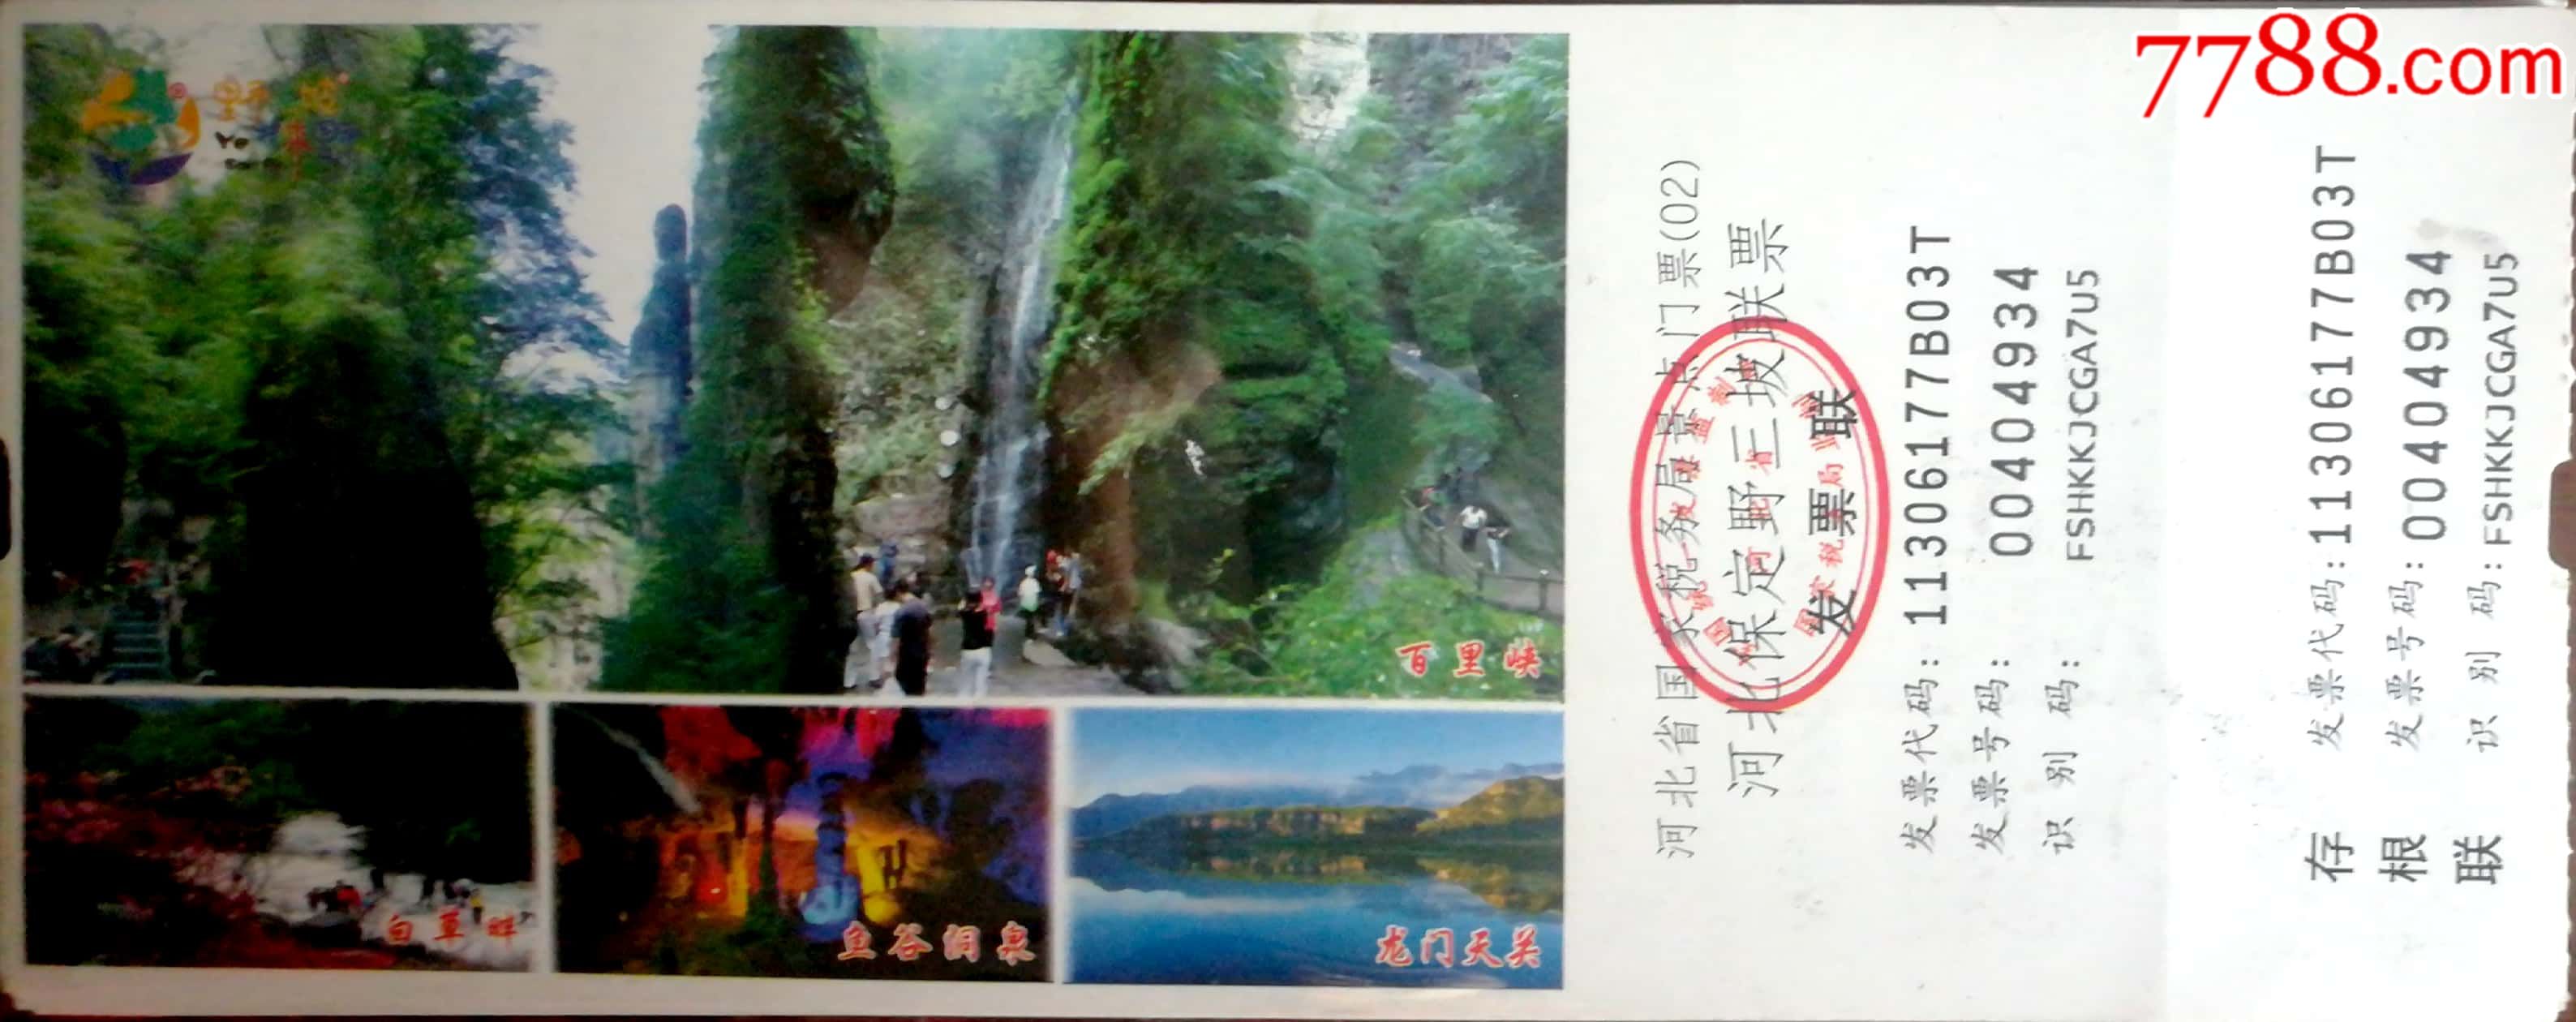 野三坡景区门票图片